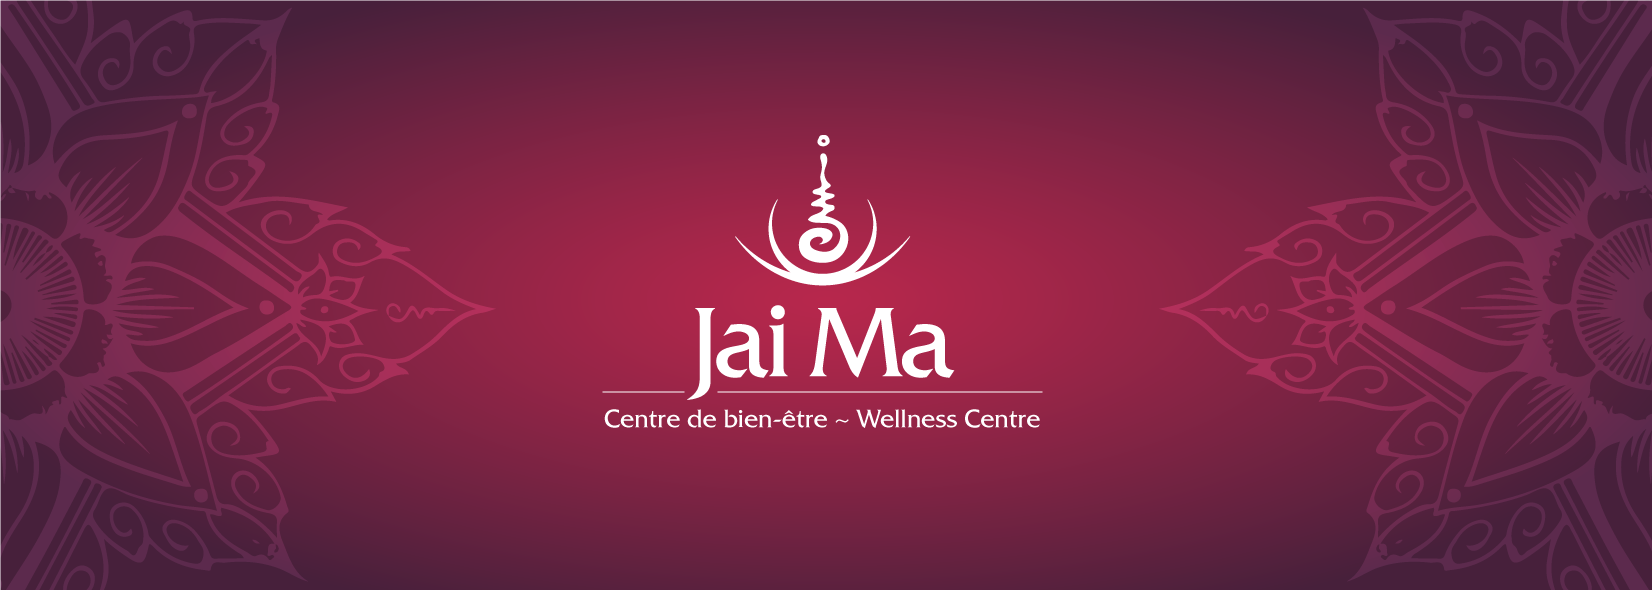 Jai Ma Wellness Centre